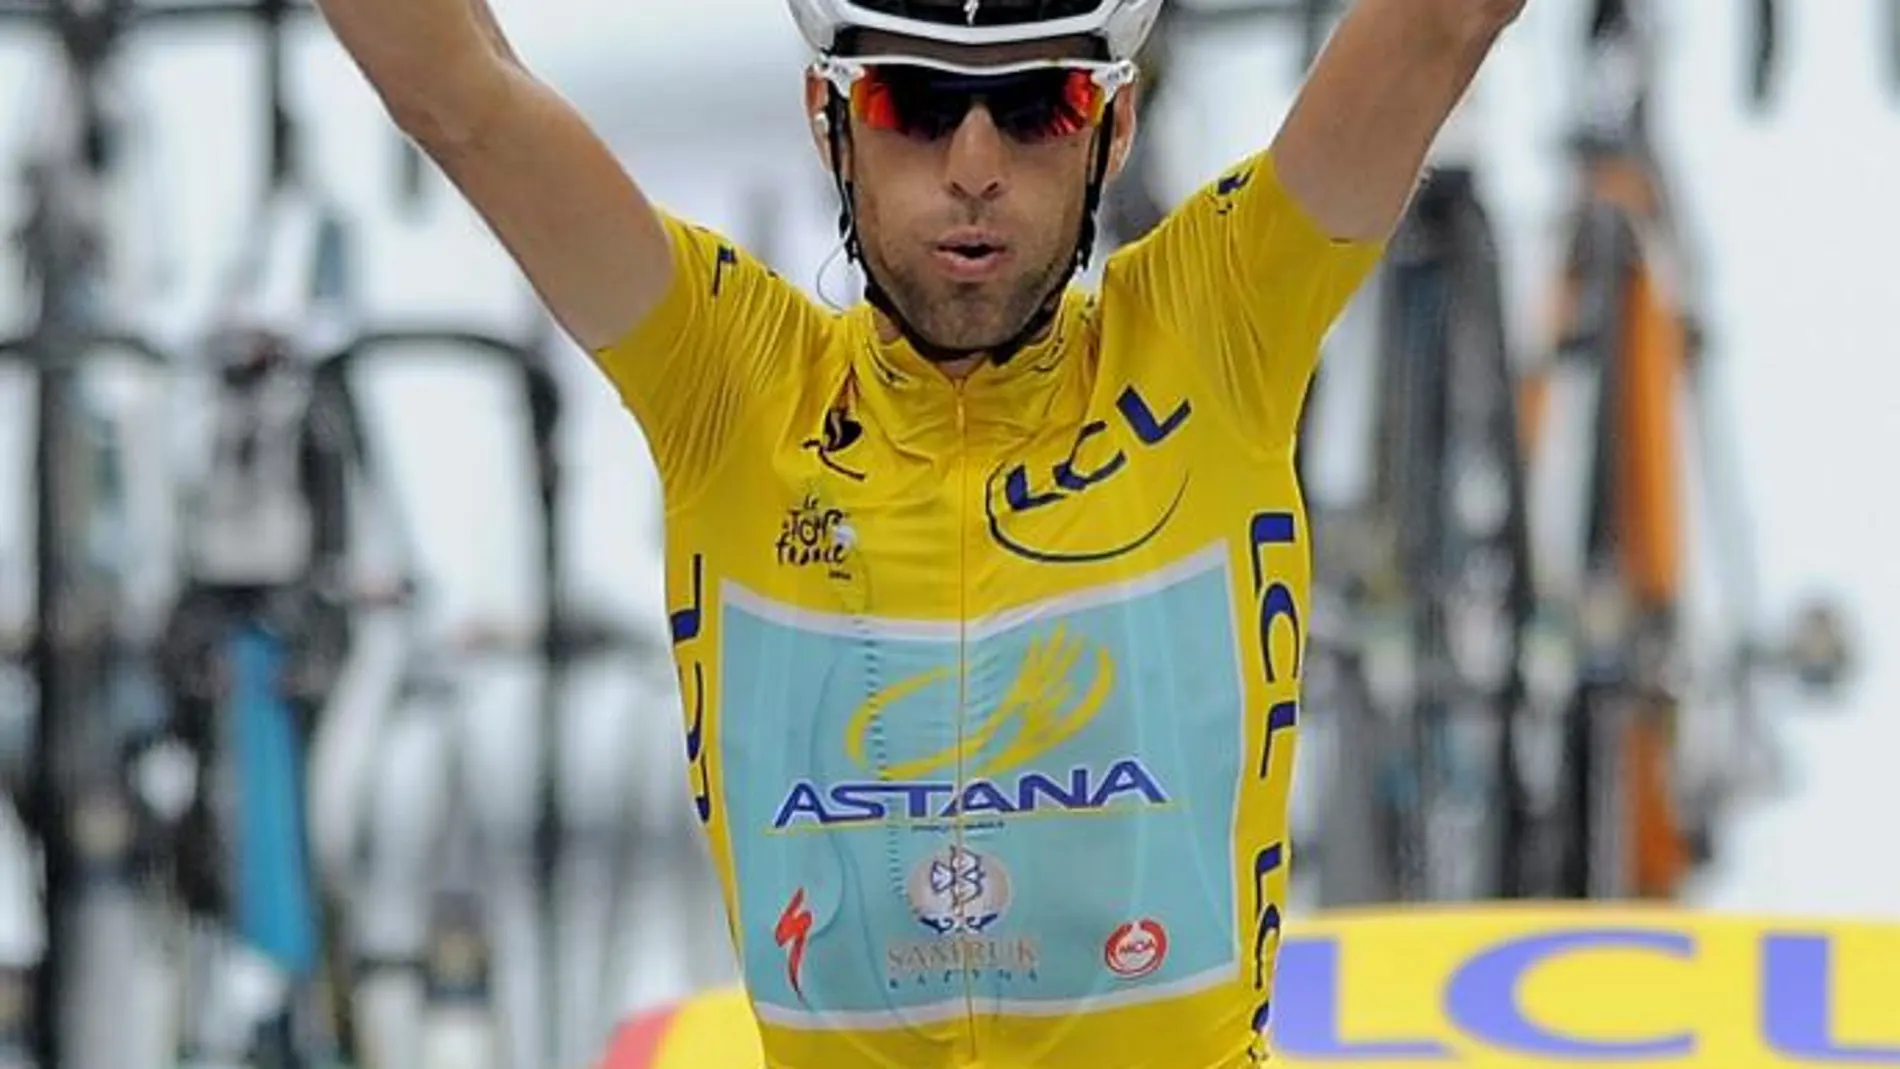 El italiano Vincenzo Nibali del equipo Astana